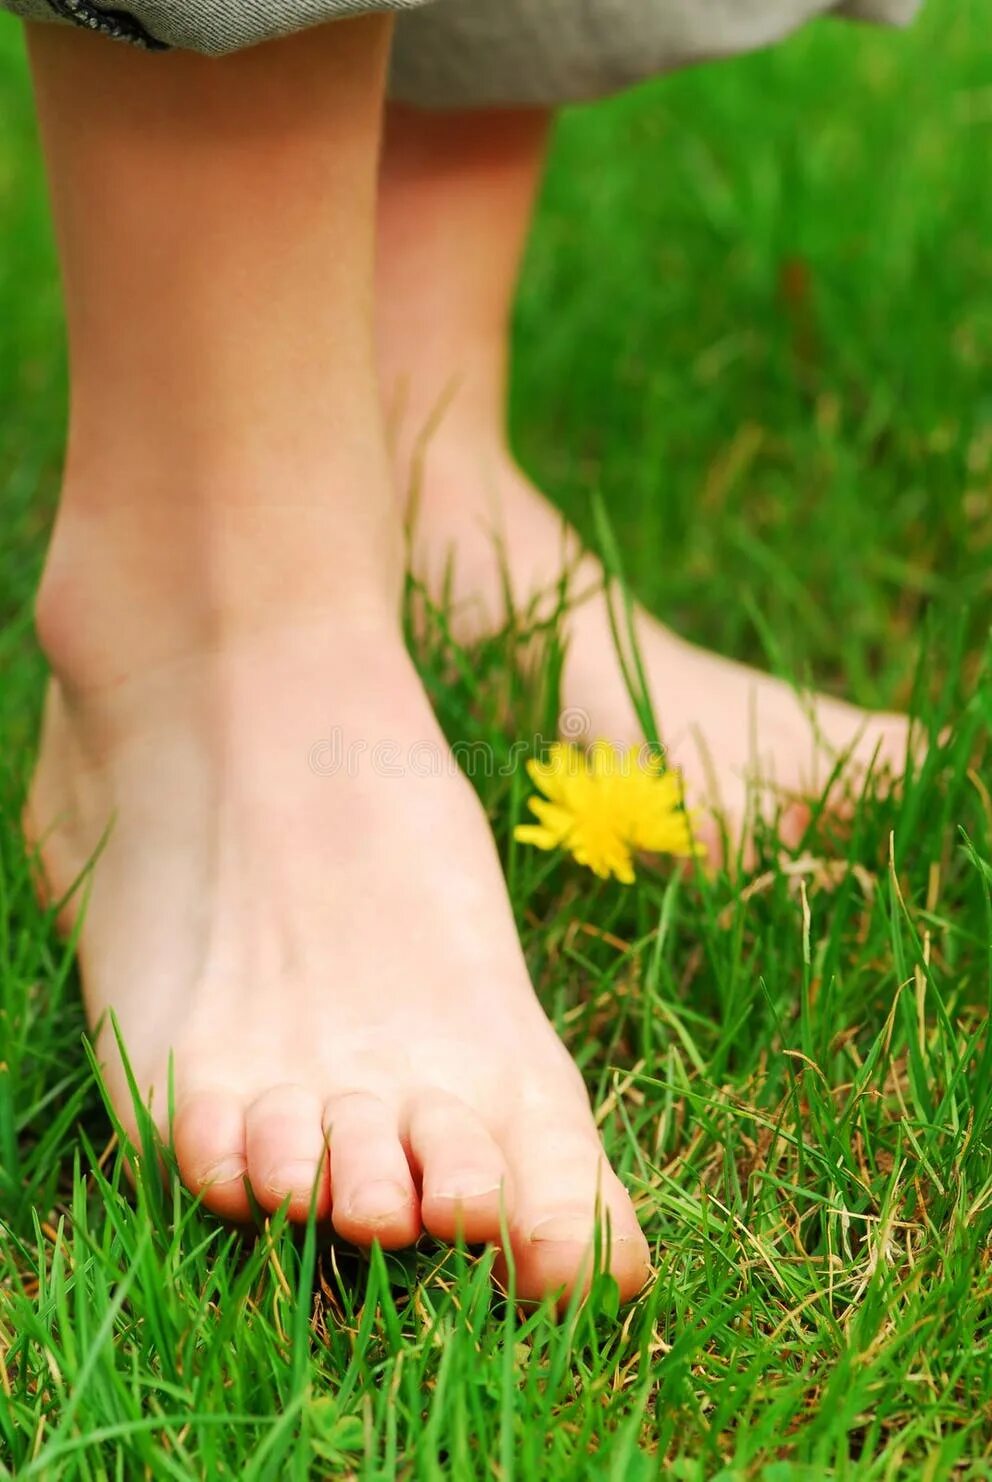 Босые ноги песня баста. Босые подошвы девочек подростков. Маленькие стопы девушек на природе. Ступни ног на траве. Зеленые стопы.